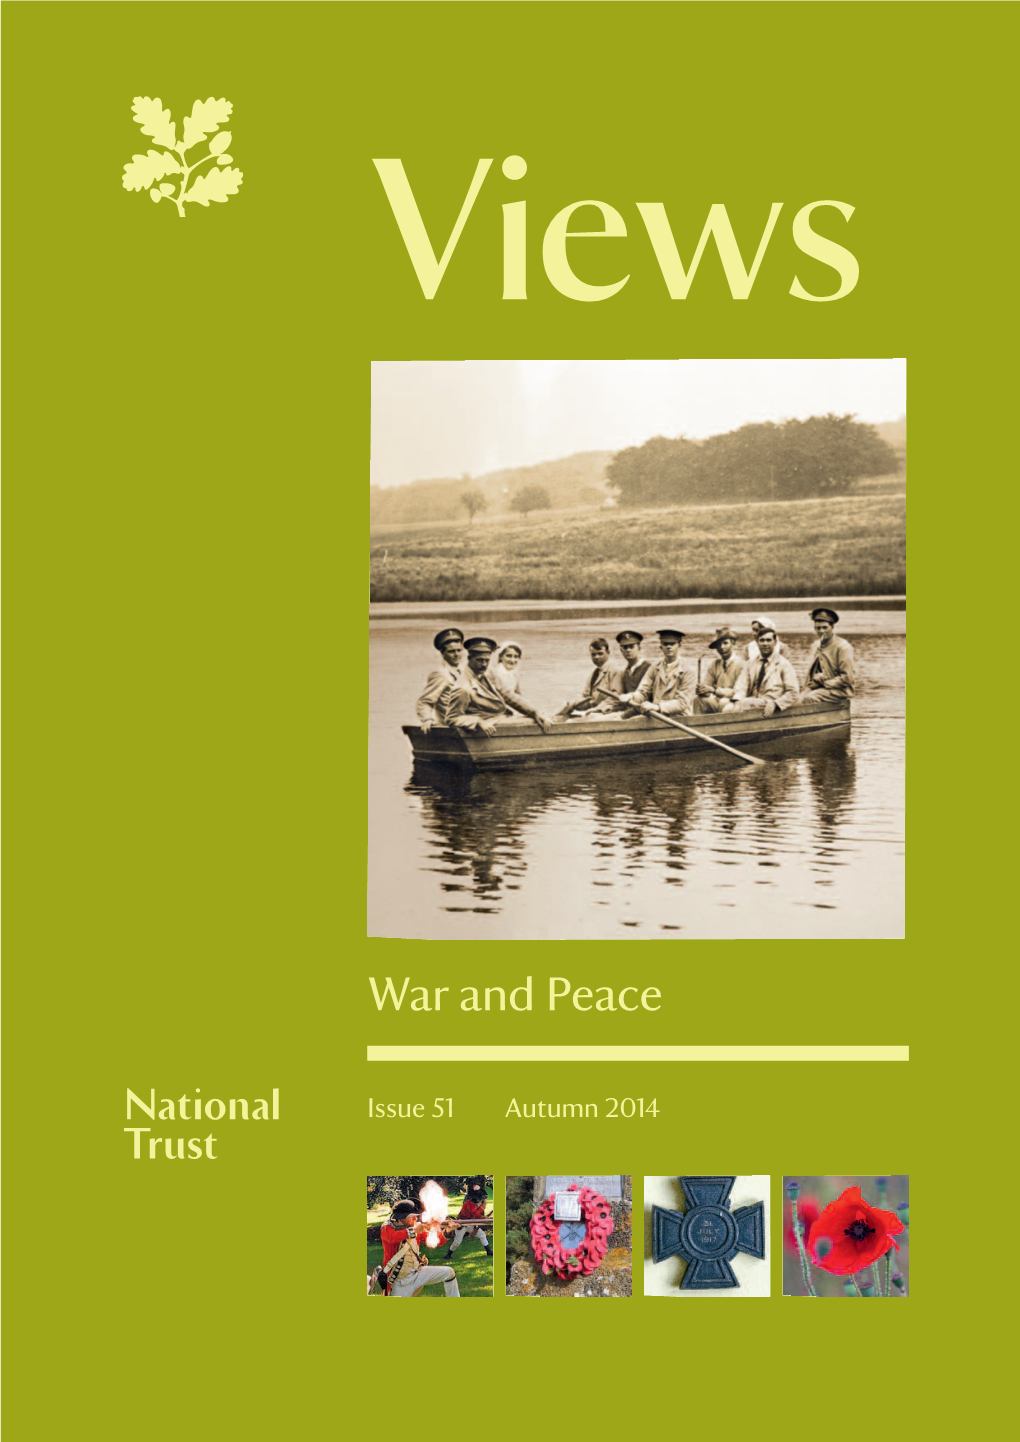 "Views" Issue 51, Autumn 2014